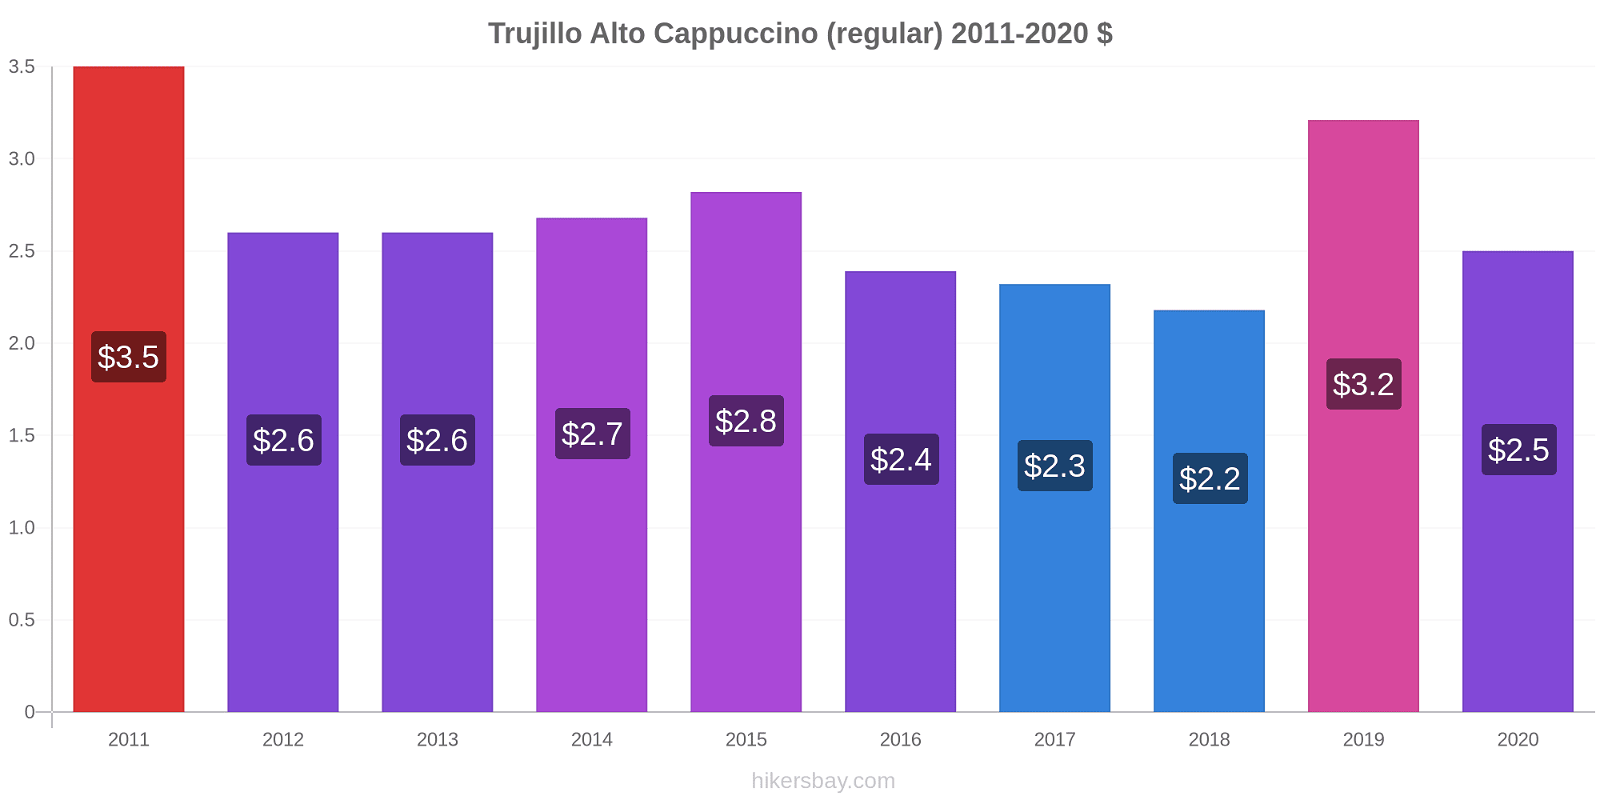 Trujillo Alto variação de preço Capuccino (regular) hikersbay.com